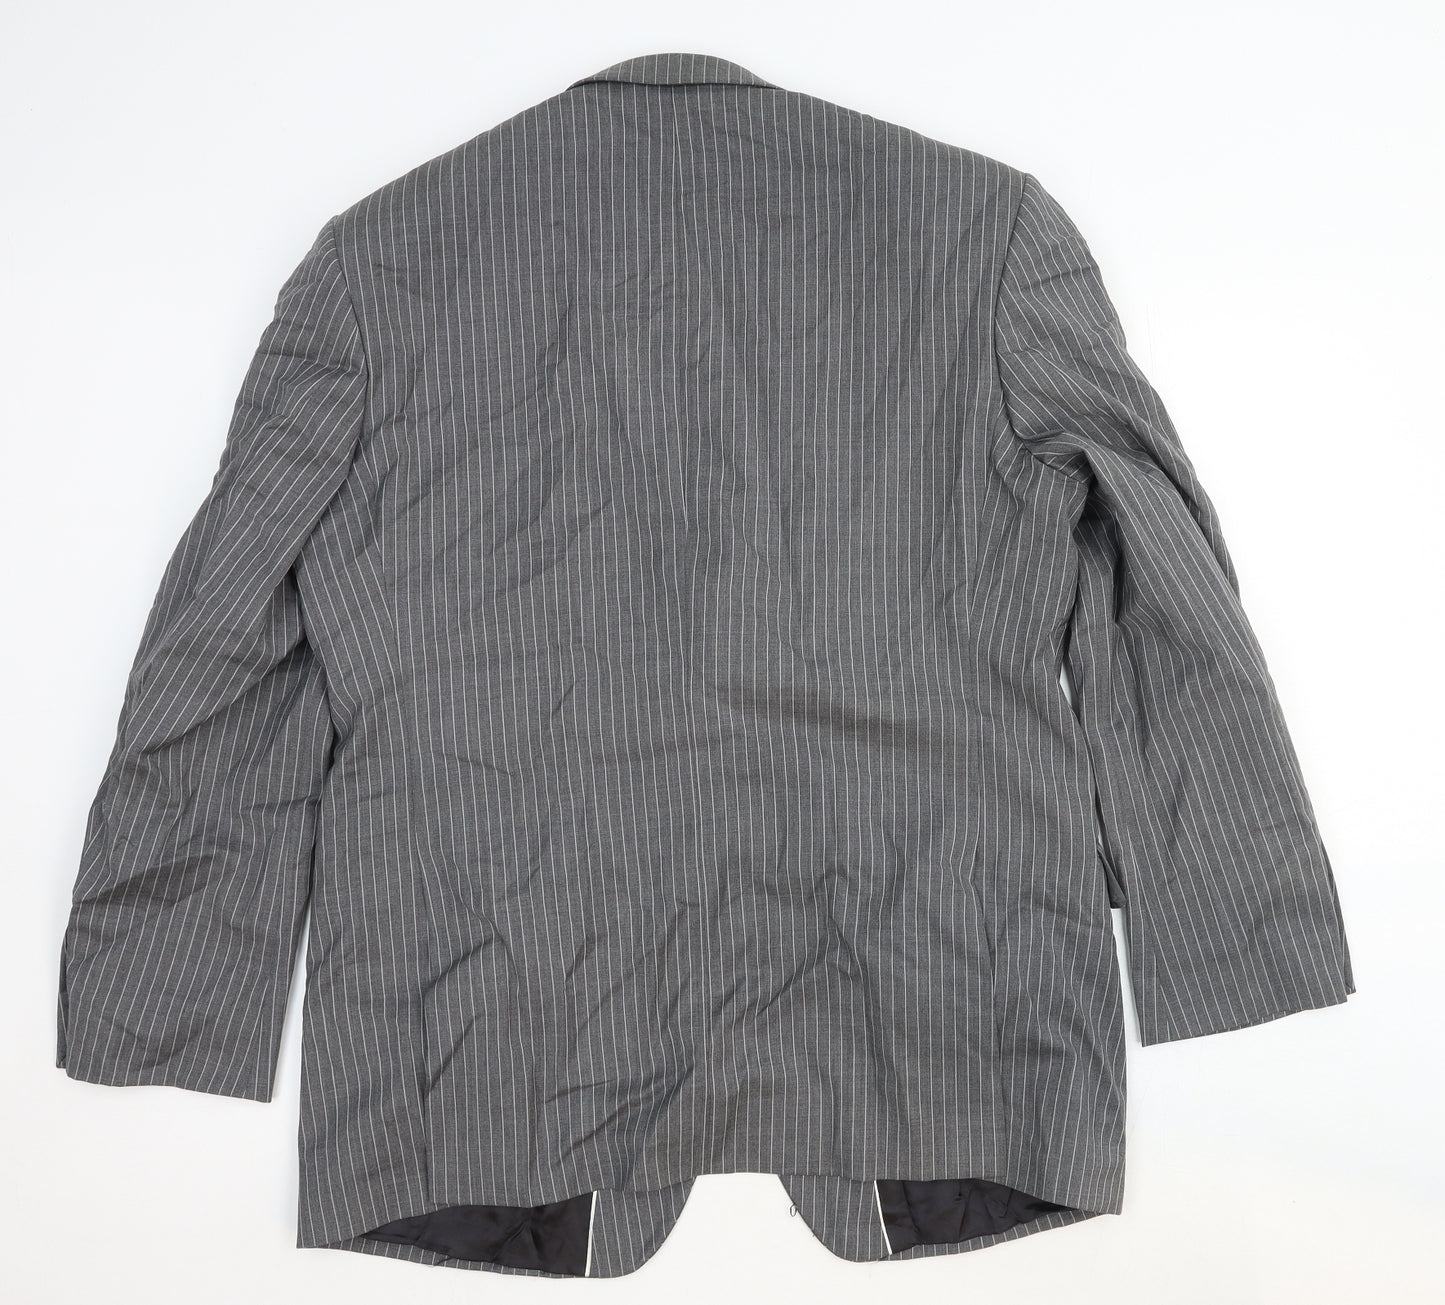 Ben Sherman Mens Grey Striped Wool Jacket Suit Jacket Size 44 Regular